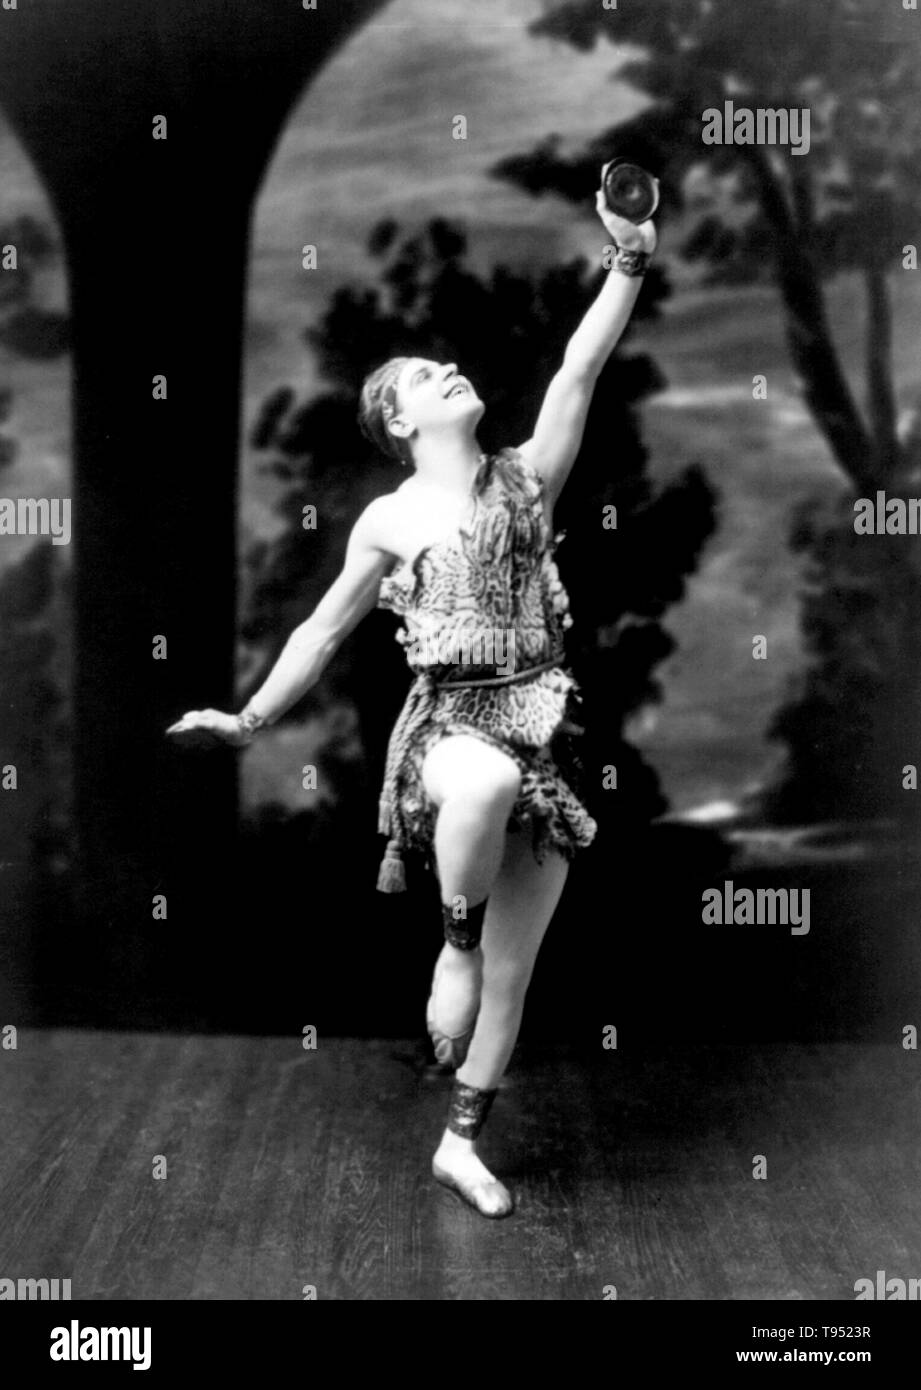 Stafford Pemberton tragen Höhlenmensch Kostüm und Holding disc, im modernen Tanz darstellen. Modern Dance ist ein breites Genre des Western Konzert oder Theater Tanz, vor allem aus Deutschland und den Vereinigten Staaten im späten 19. und frühen 20. Jahrhundert. Kein Fotograf gutgeschrieben, 13. April 1915. Stockfoto